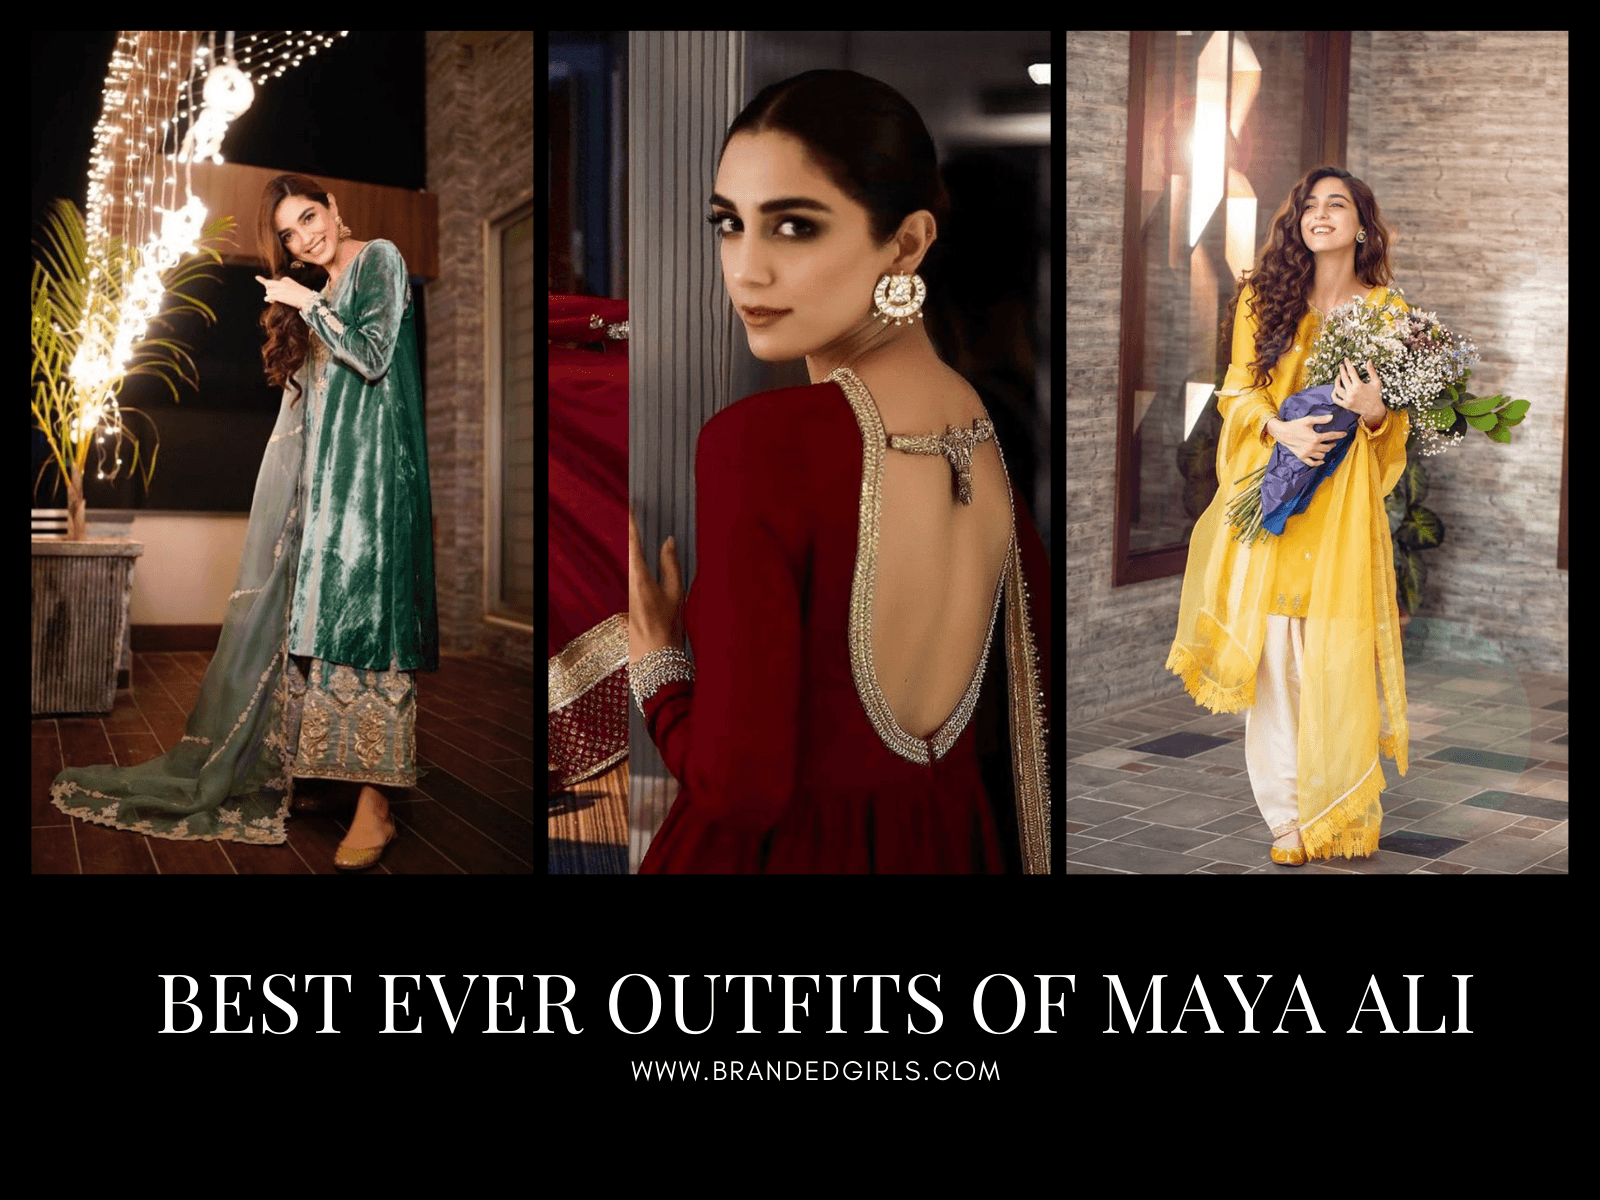 Maya Ali Outfits 24 of Maya Alis Best Dresses Ever